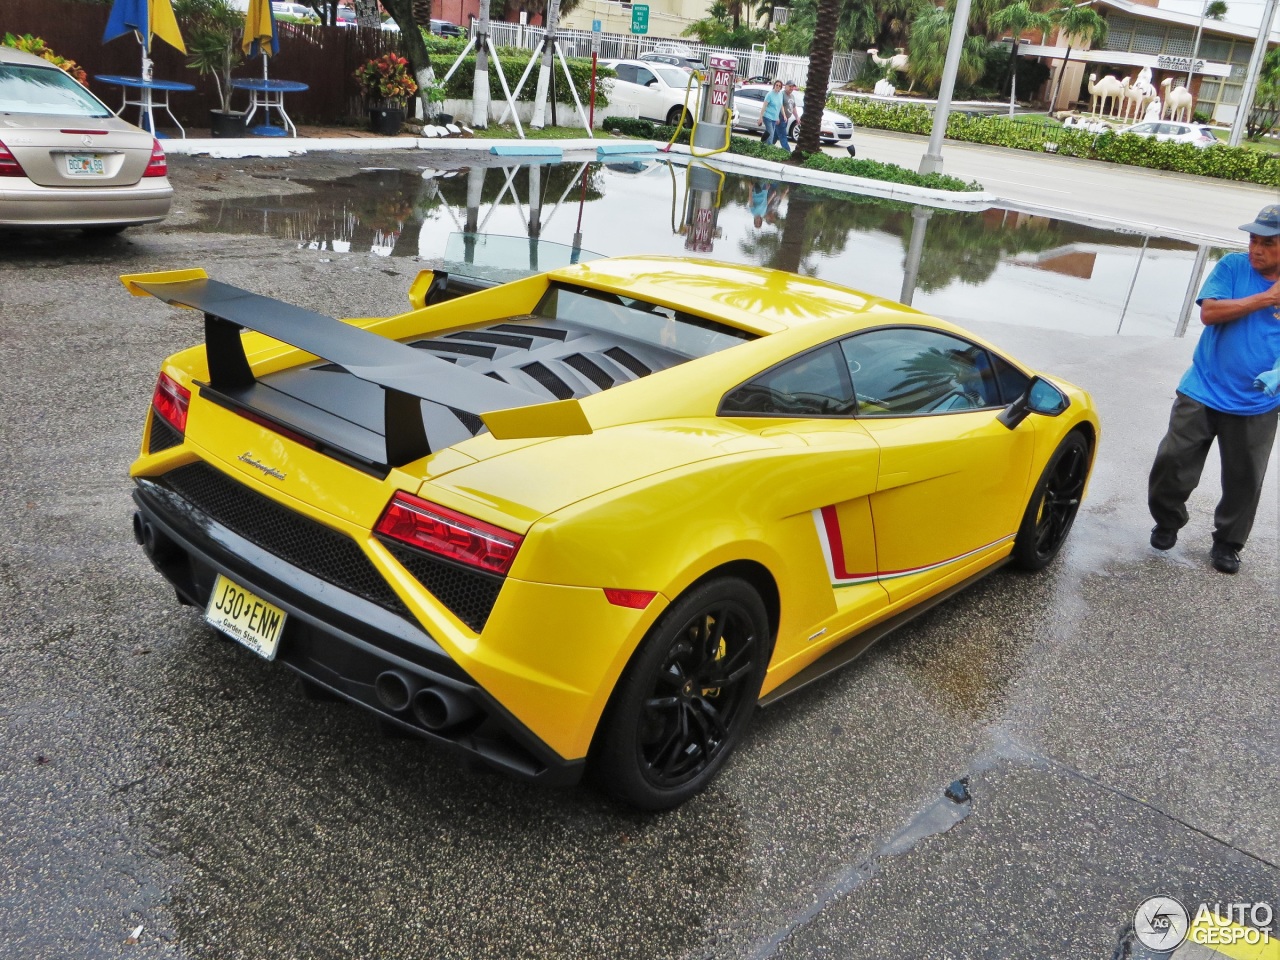 Horse-power achieved his goal of #500 Lamborghini uploads!